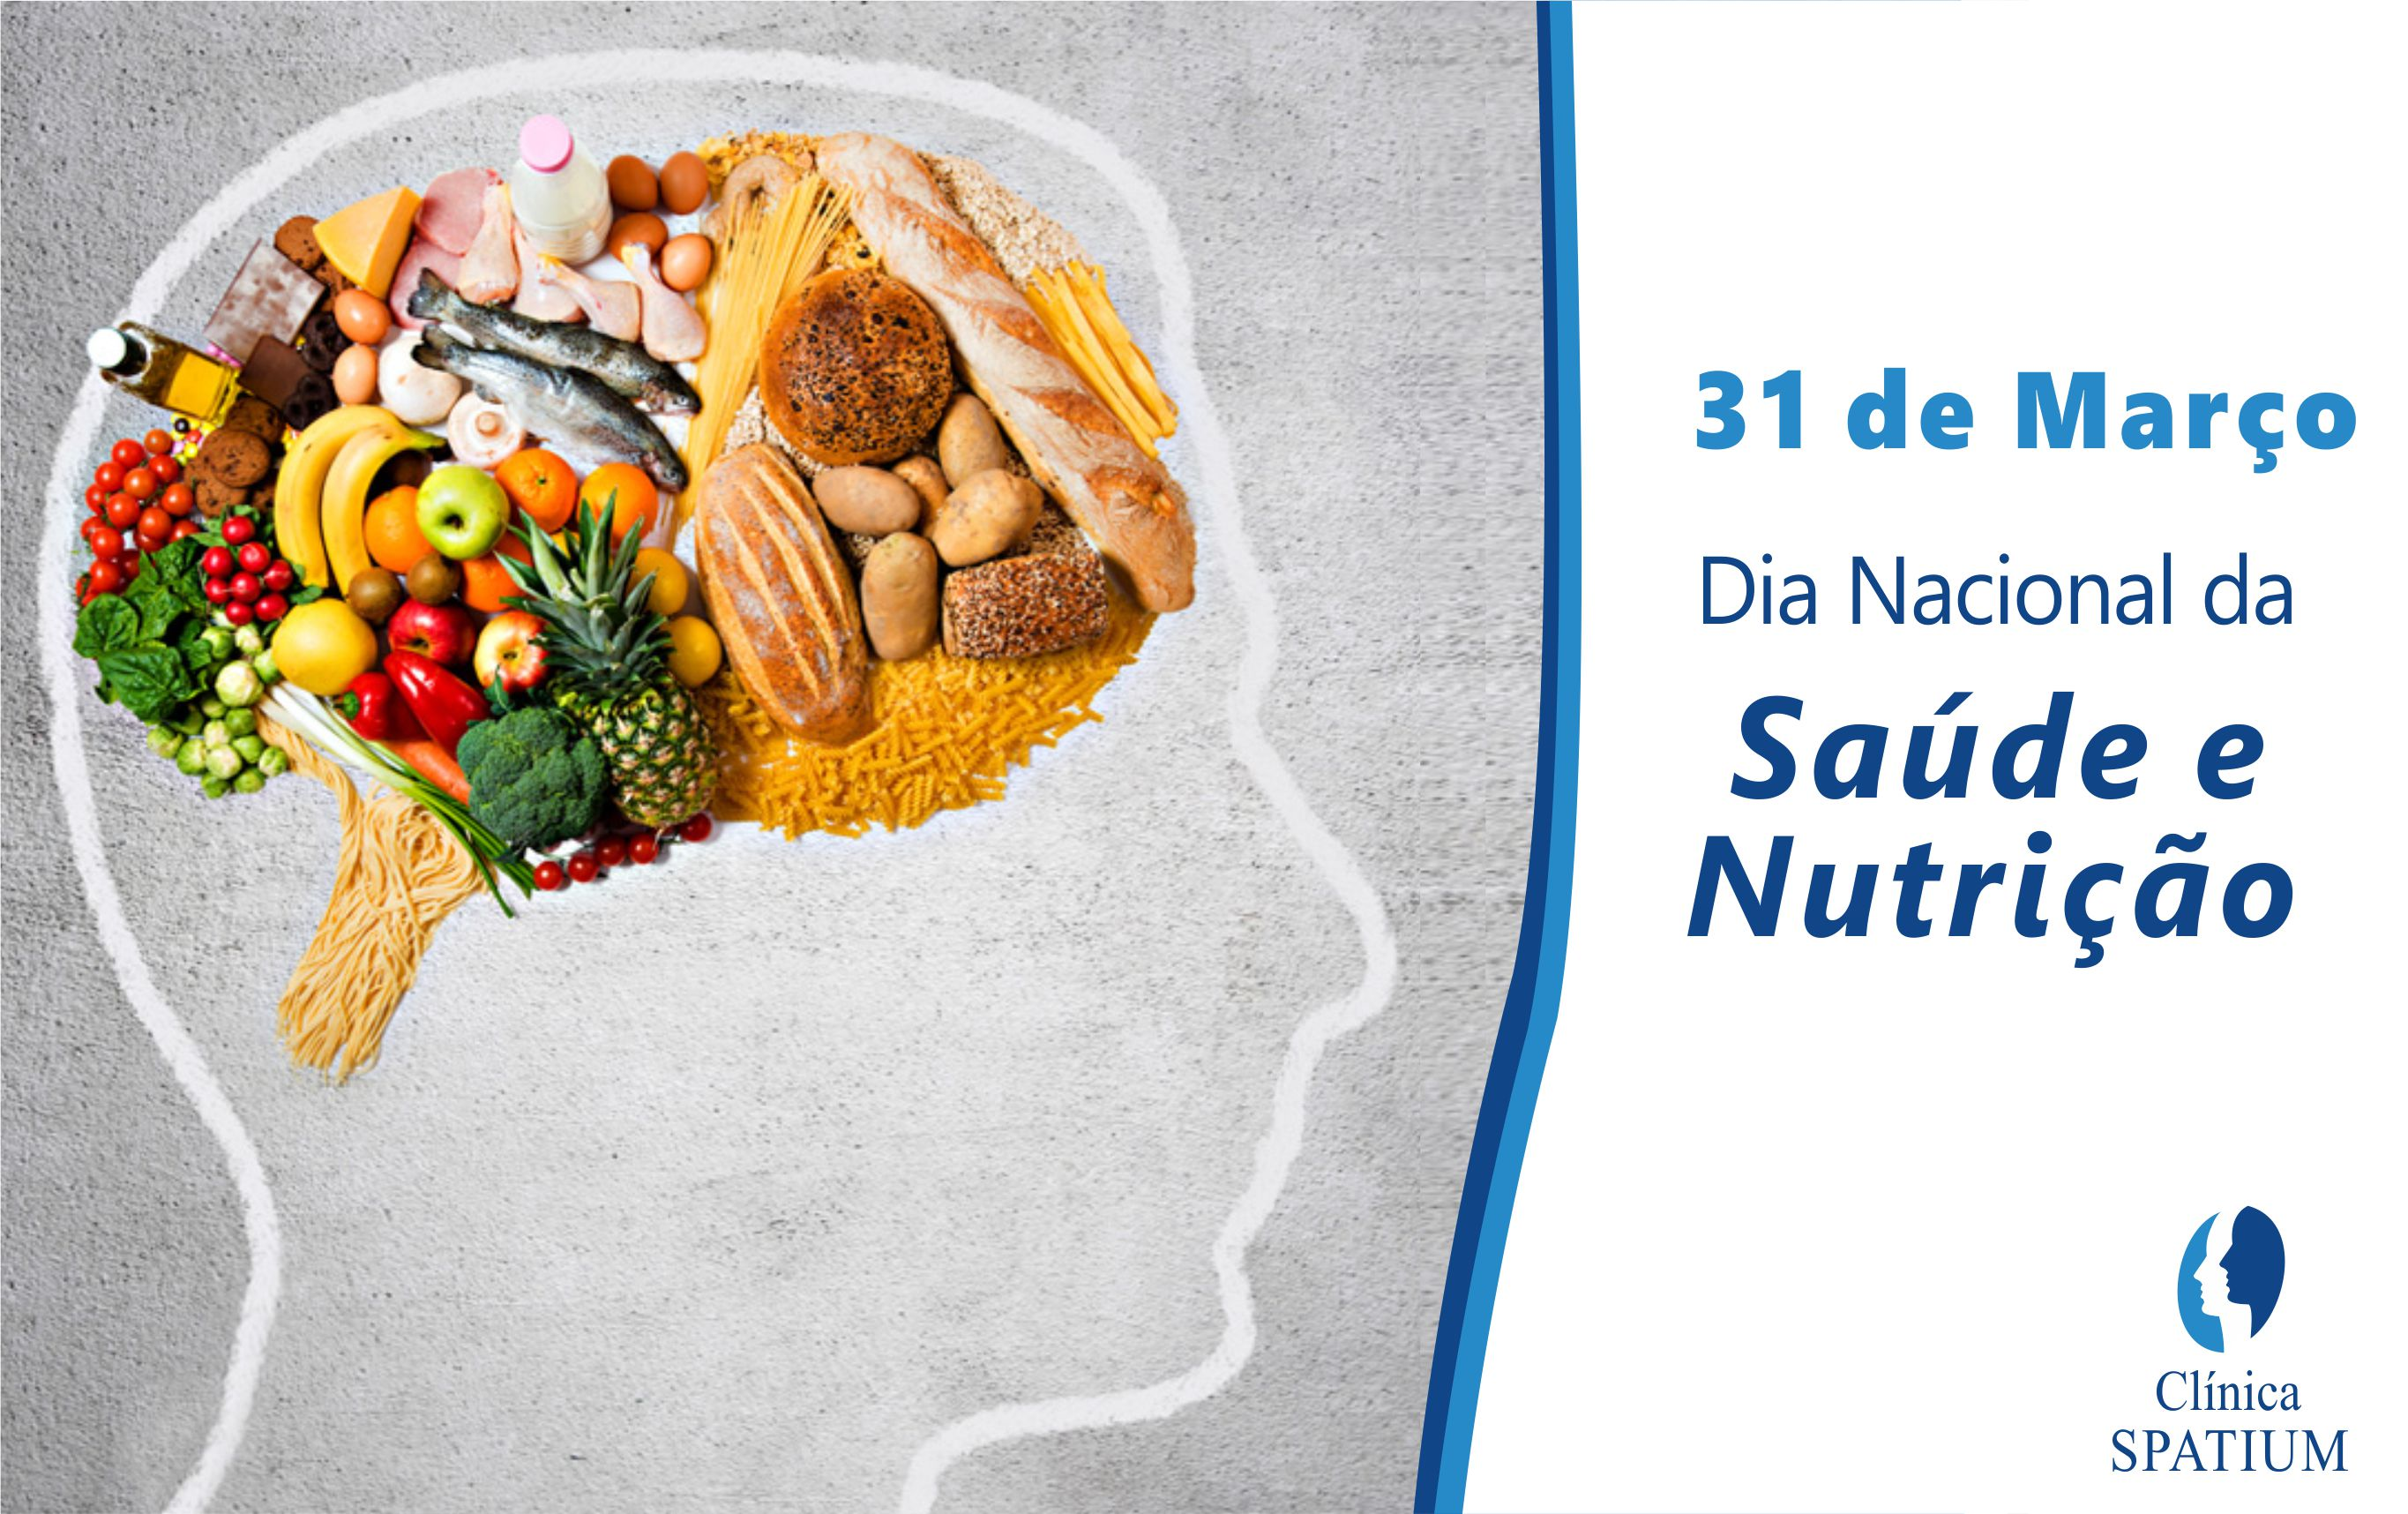 31 de Março - Dia Nacional da Saúde e Nutrição